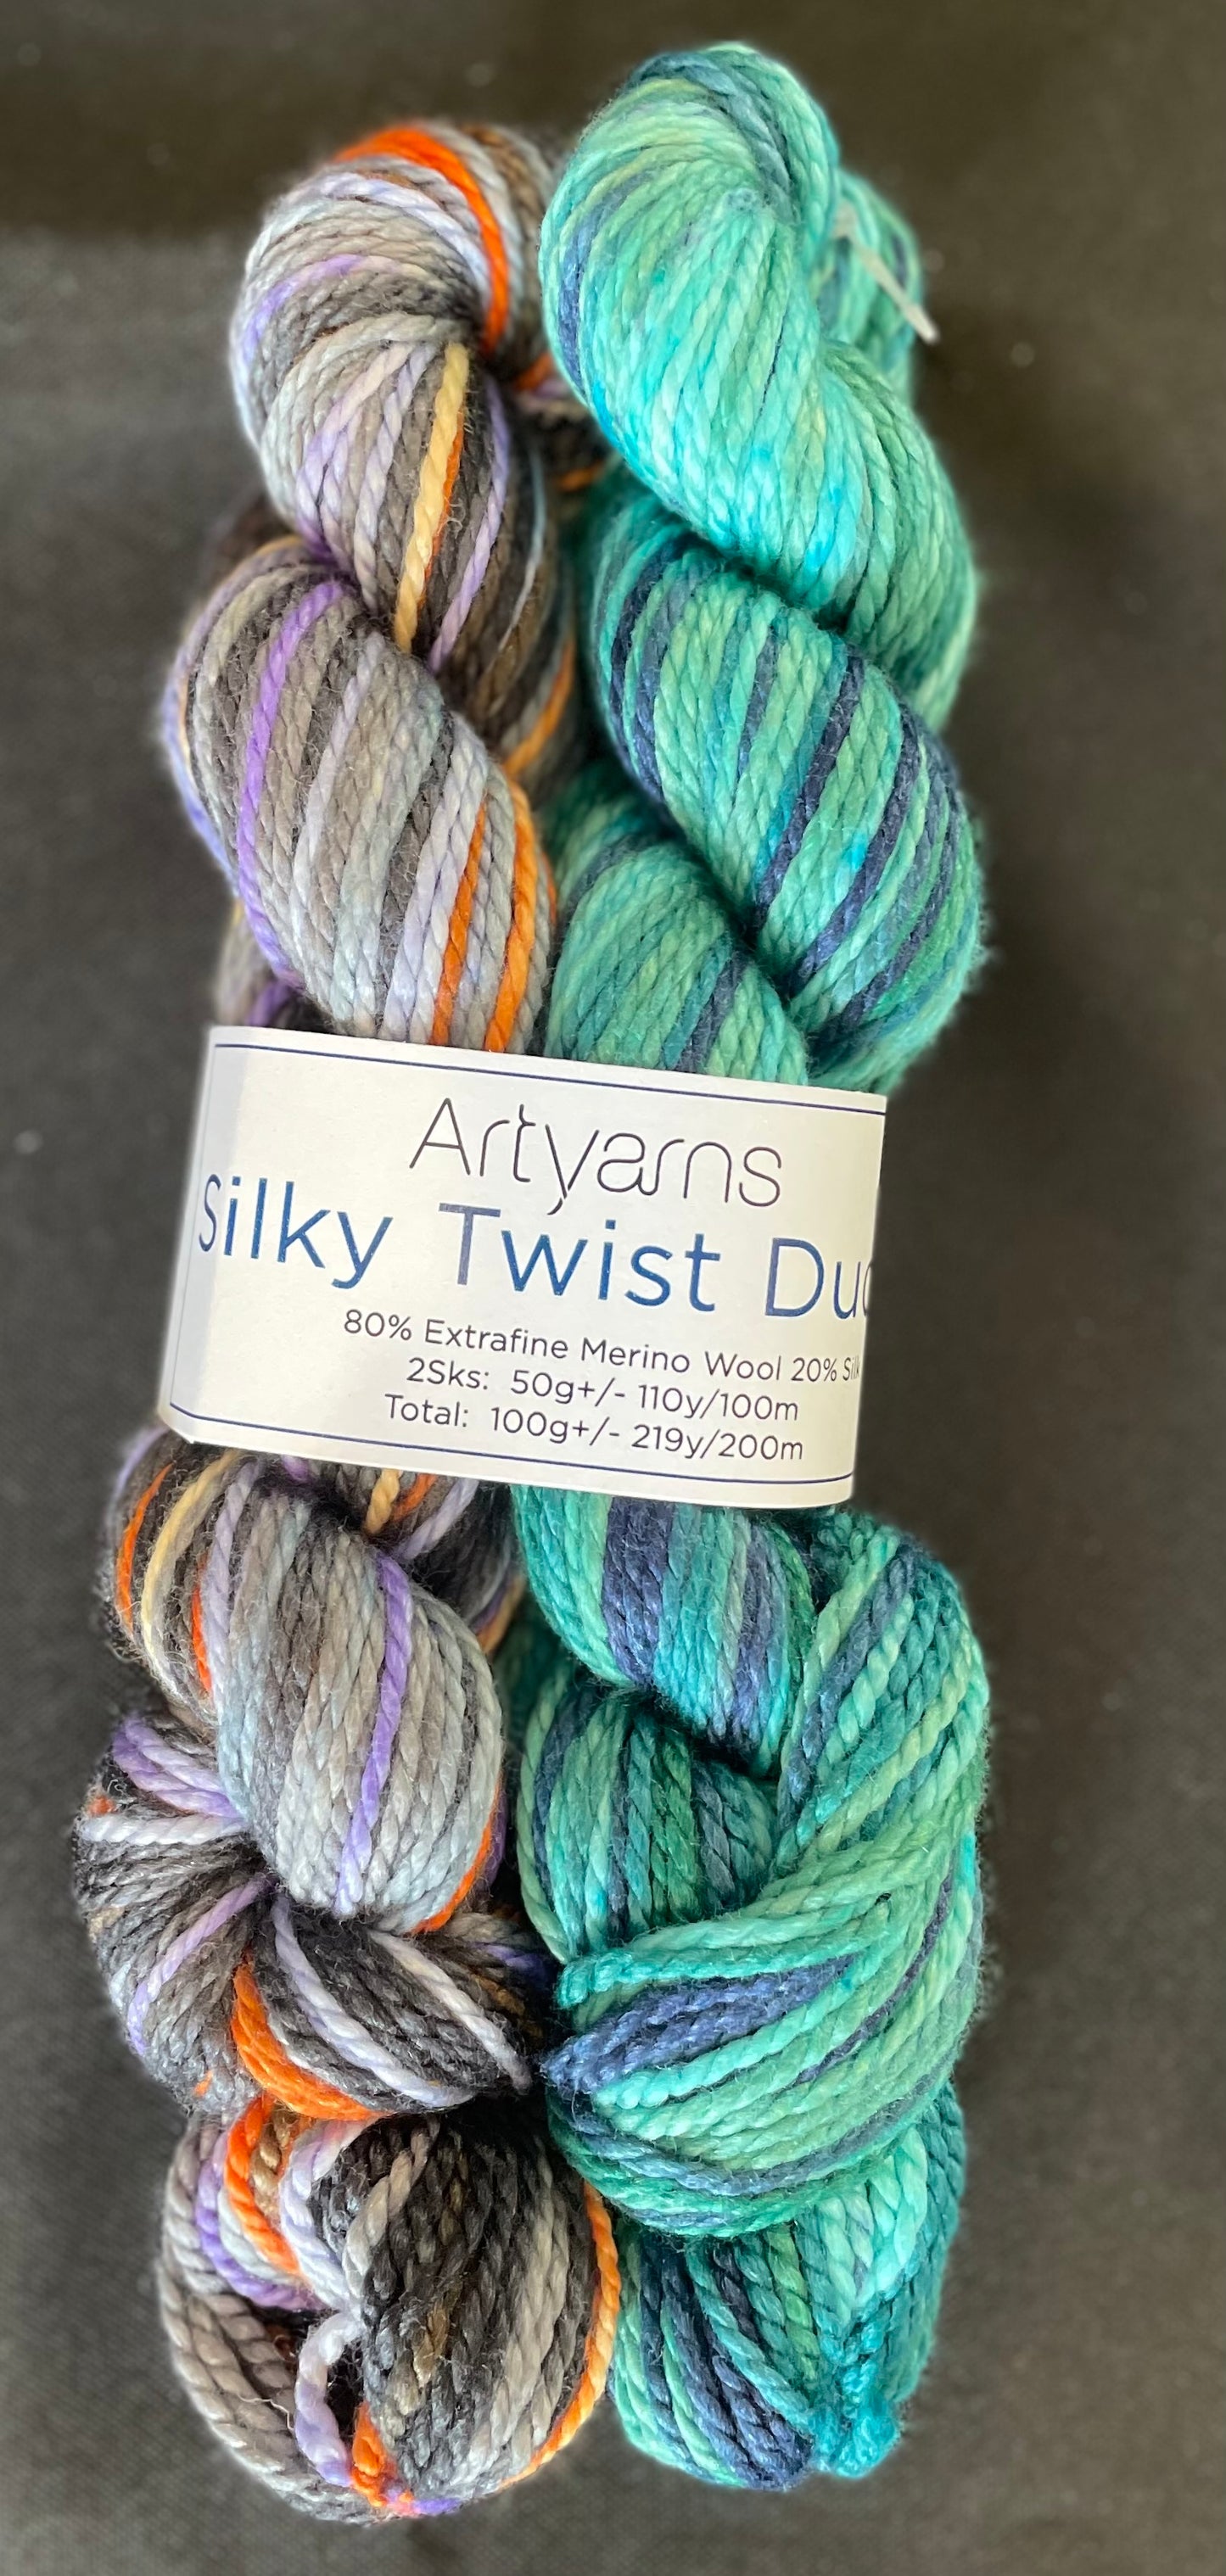 Artyarns Silky Twist Duo